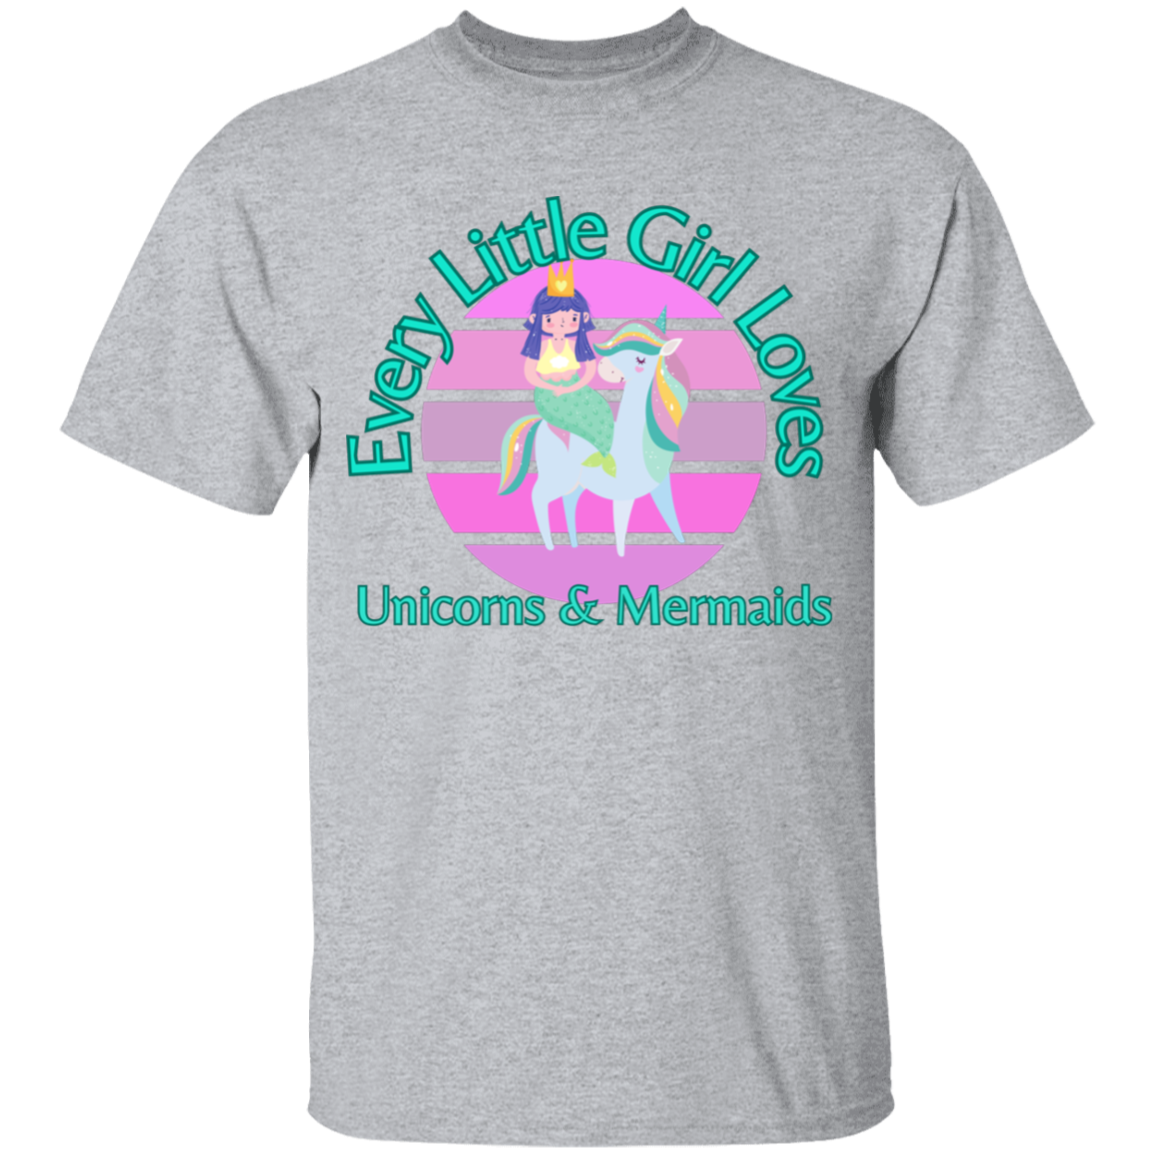 Every Little Girl Loves Unicorns and Mermaids T-Shirt For Girls